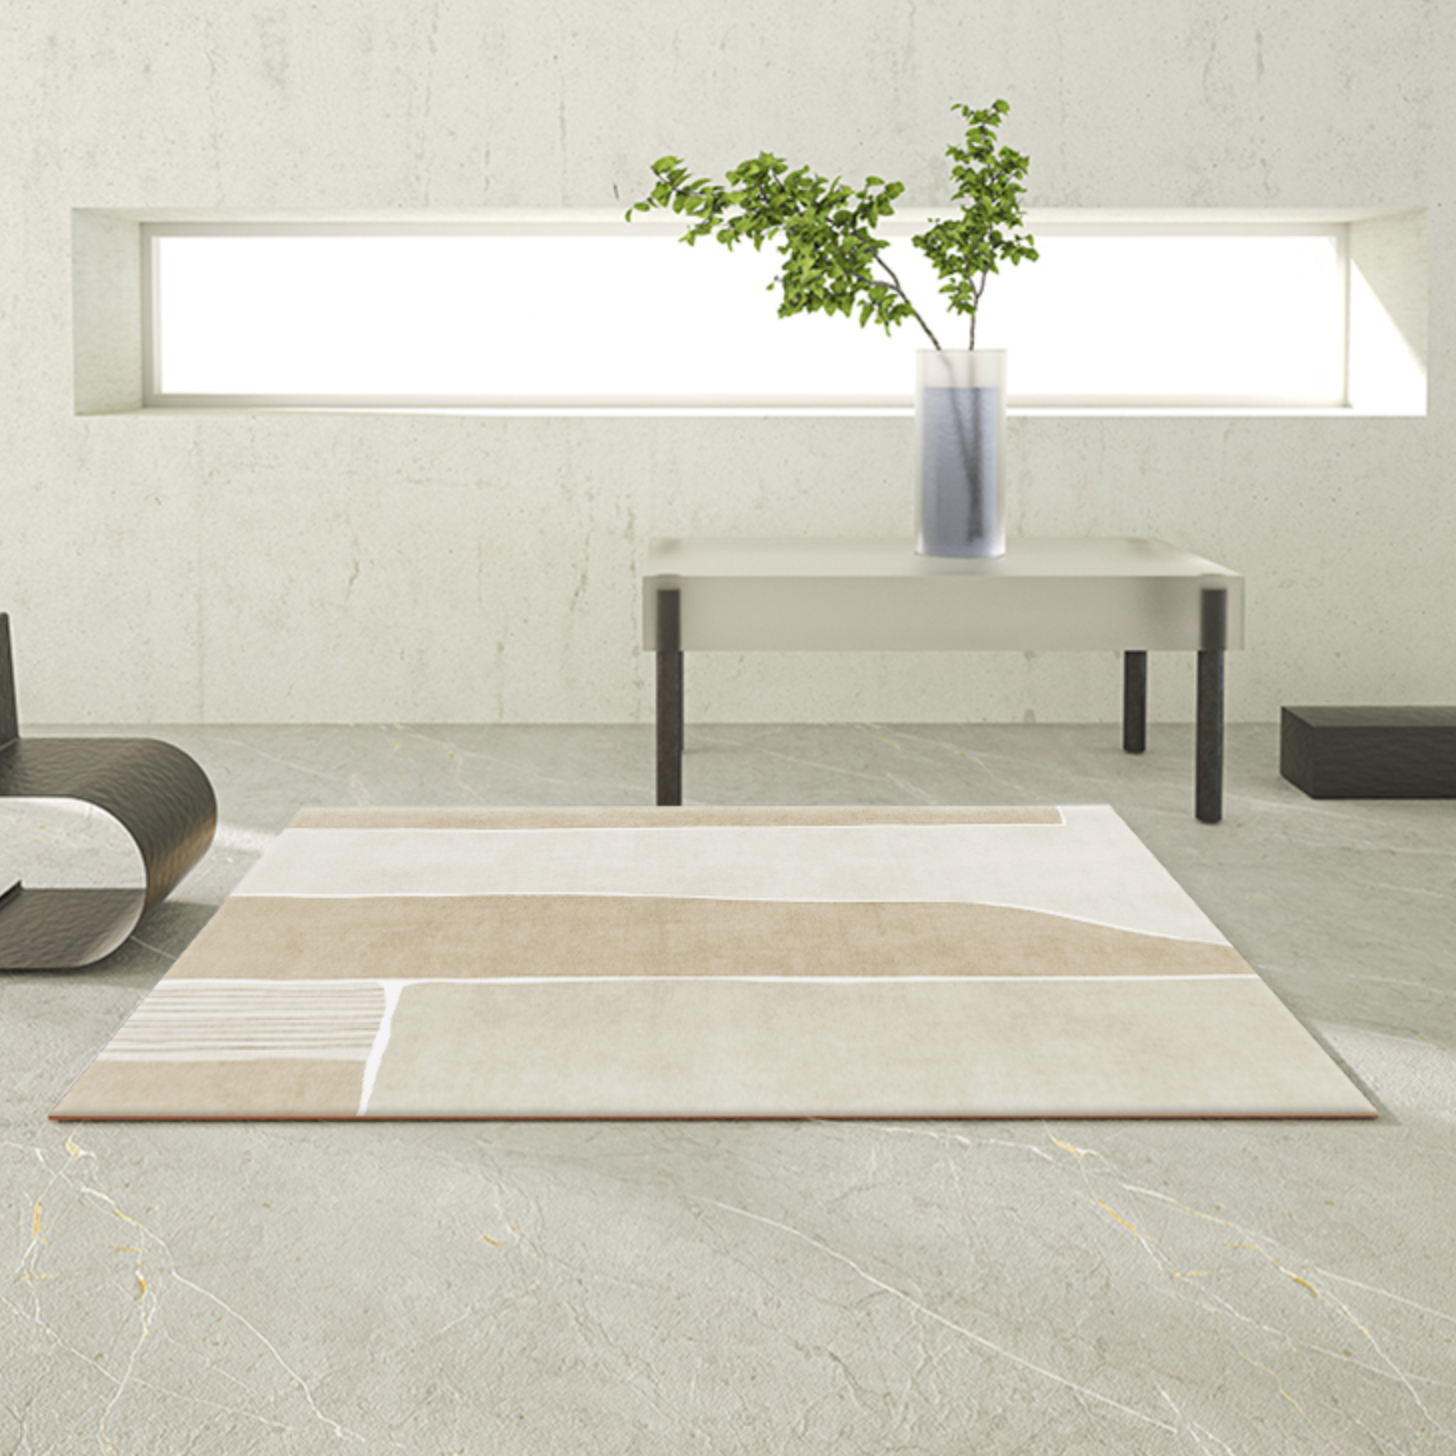 【ベストセラー】4design square carpet